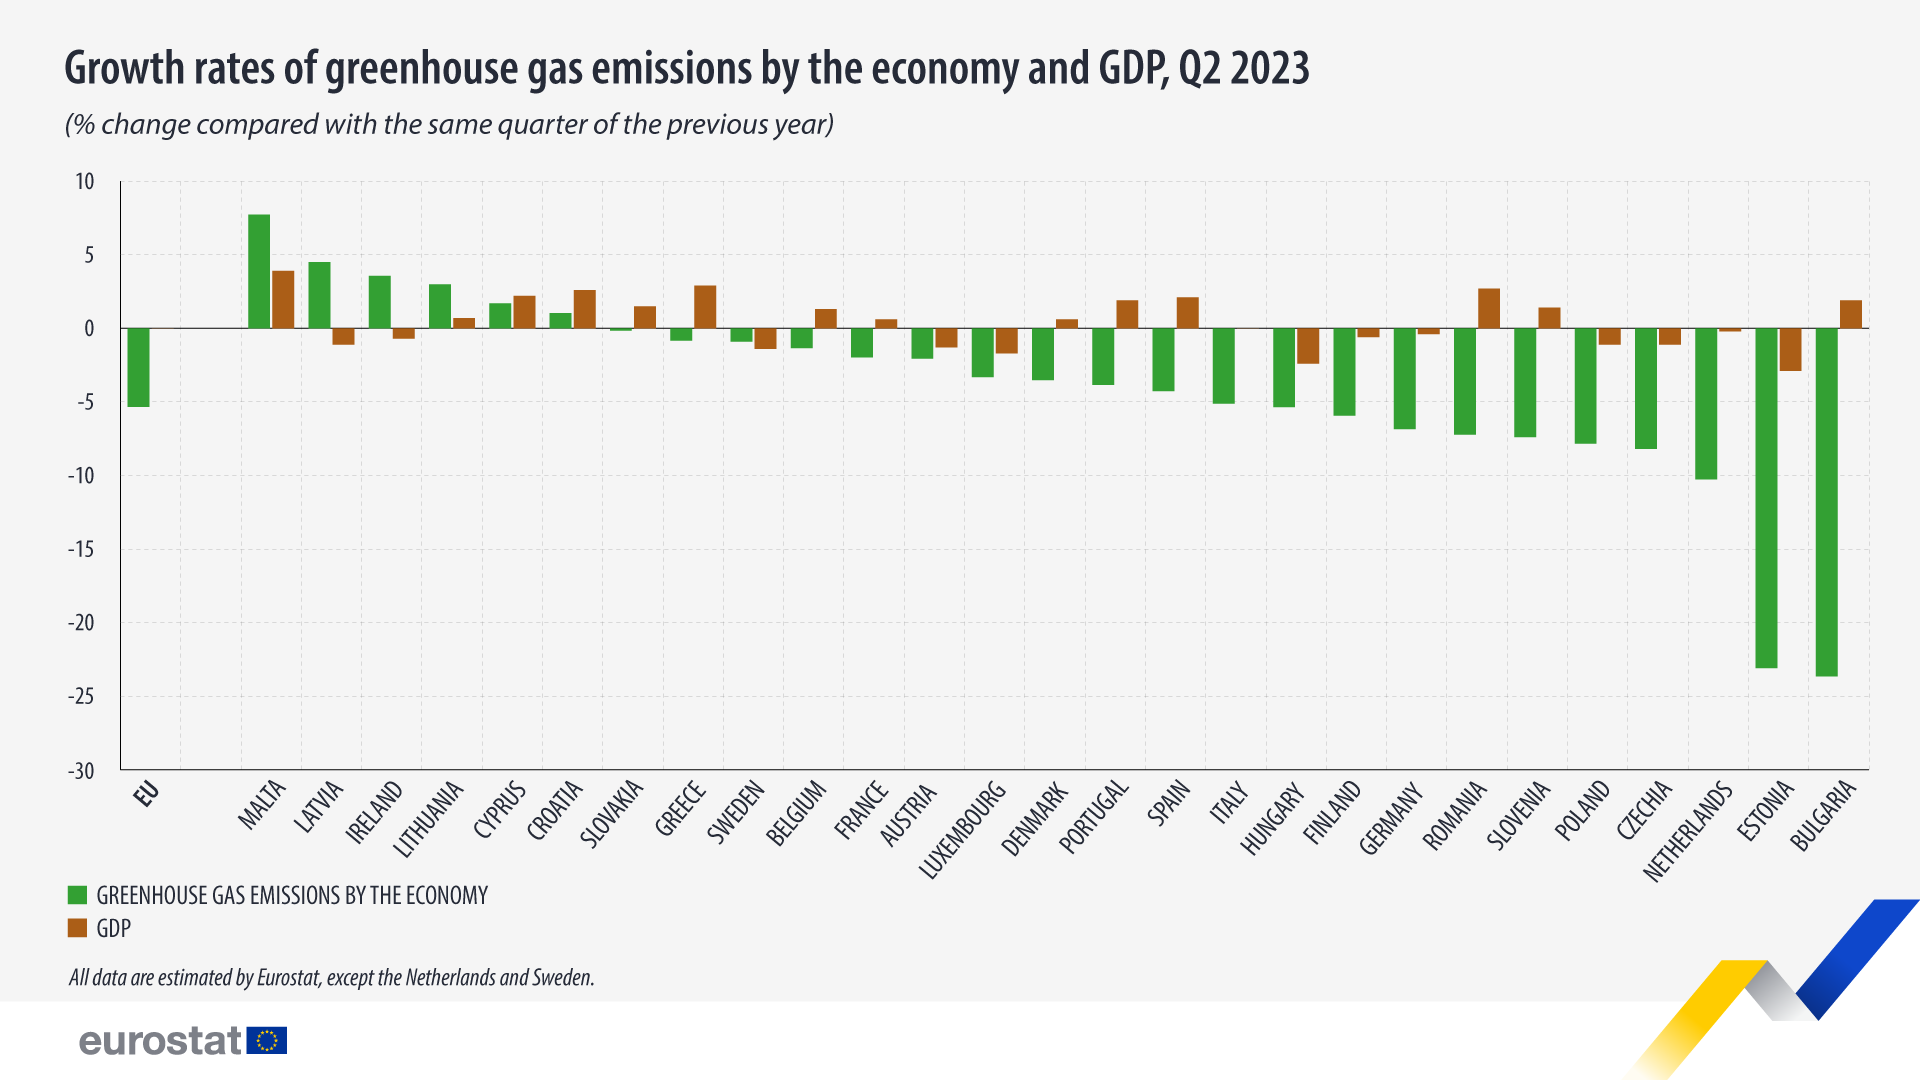 Stĺpcový graf: Miery rastu emisií skleníkových plynov podľa ekonomiky a HDP, % zmena v porovnaní s rovnakým štvrťrokom predchádzajúceho roka 2. štvrťrok 2023